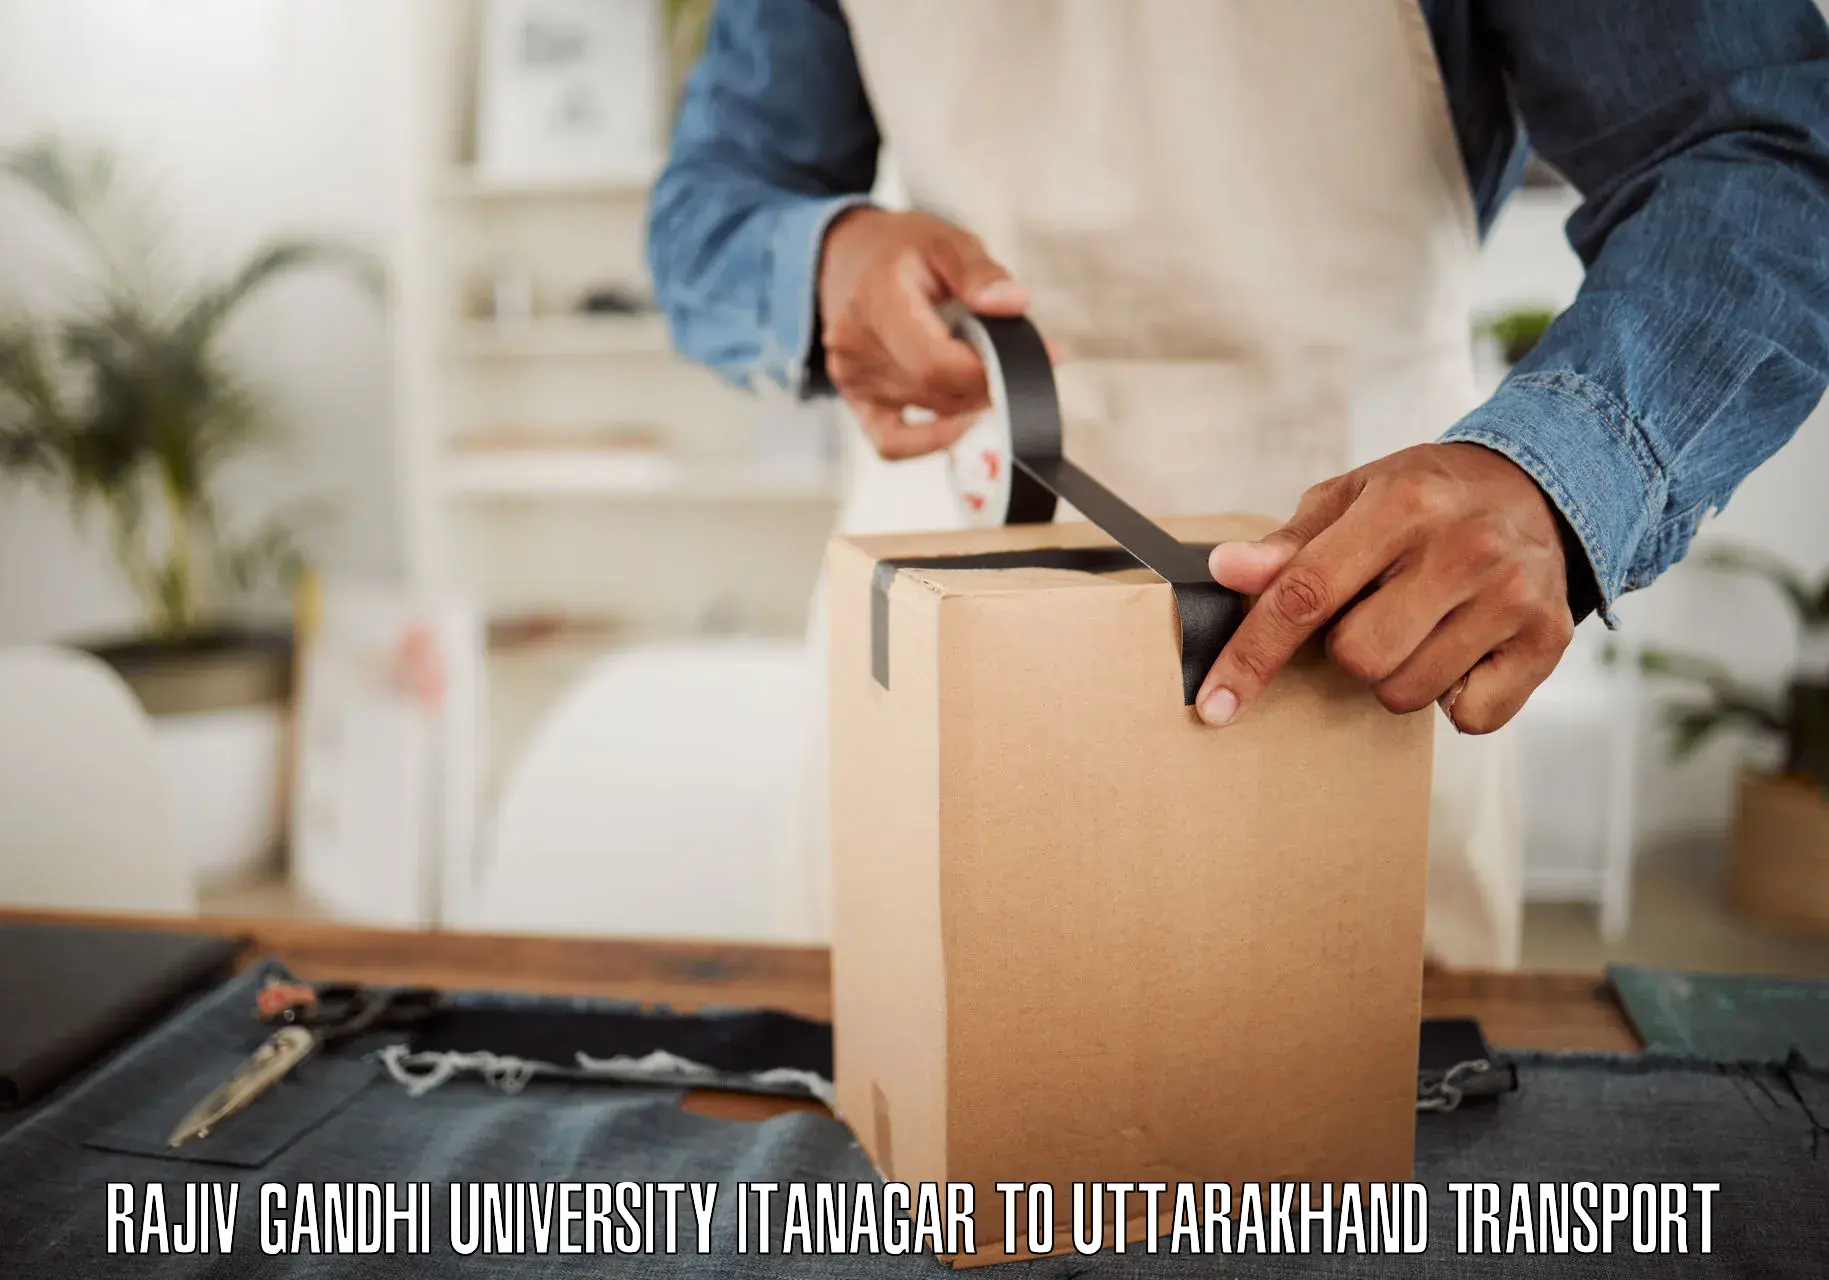 Furniture transport service Rajiv Gandhi University Itanagar to Joshimath